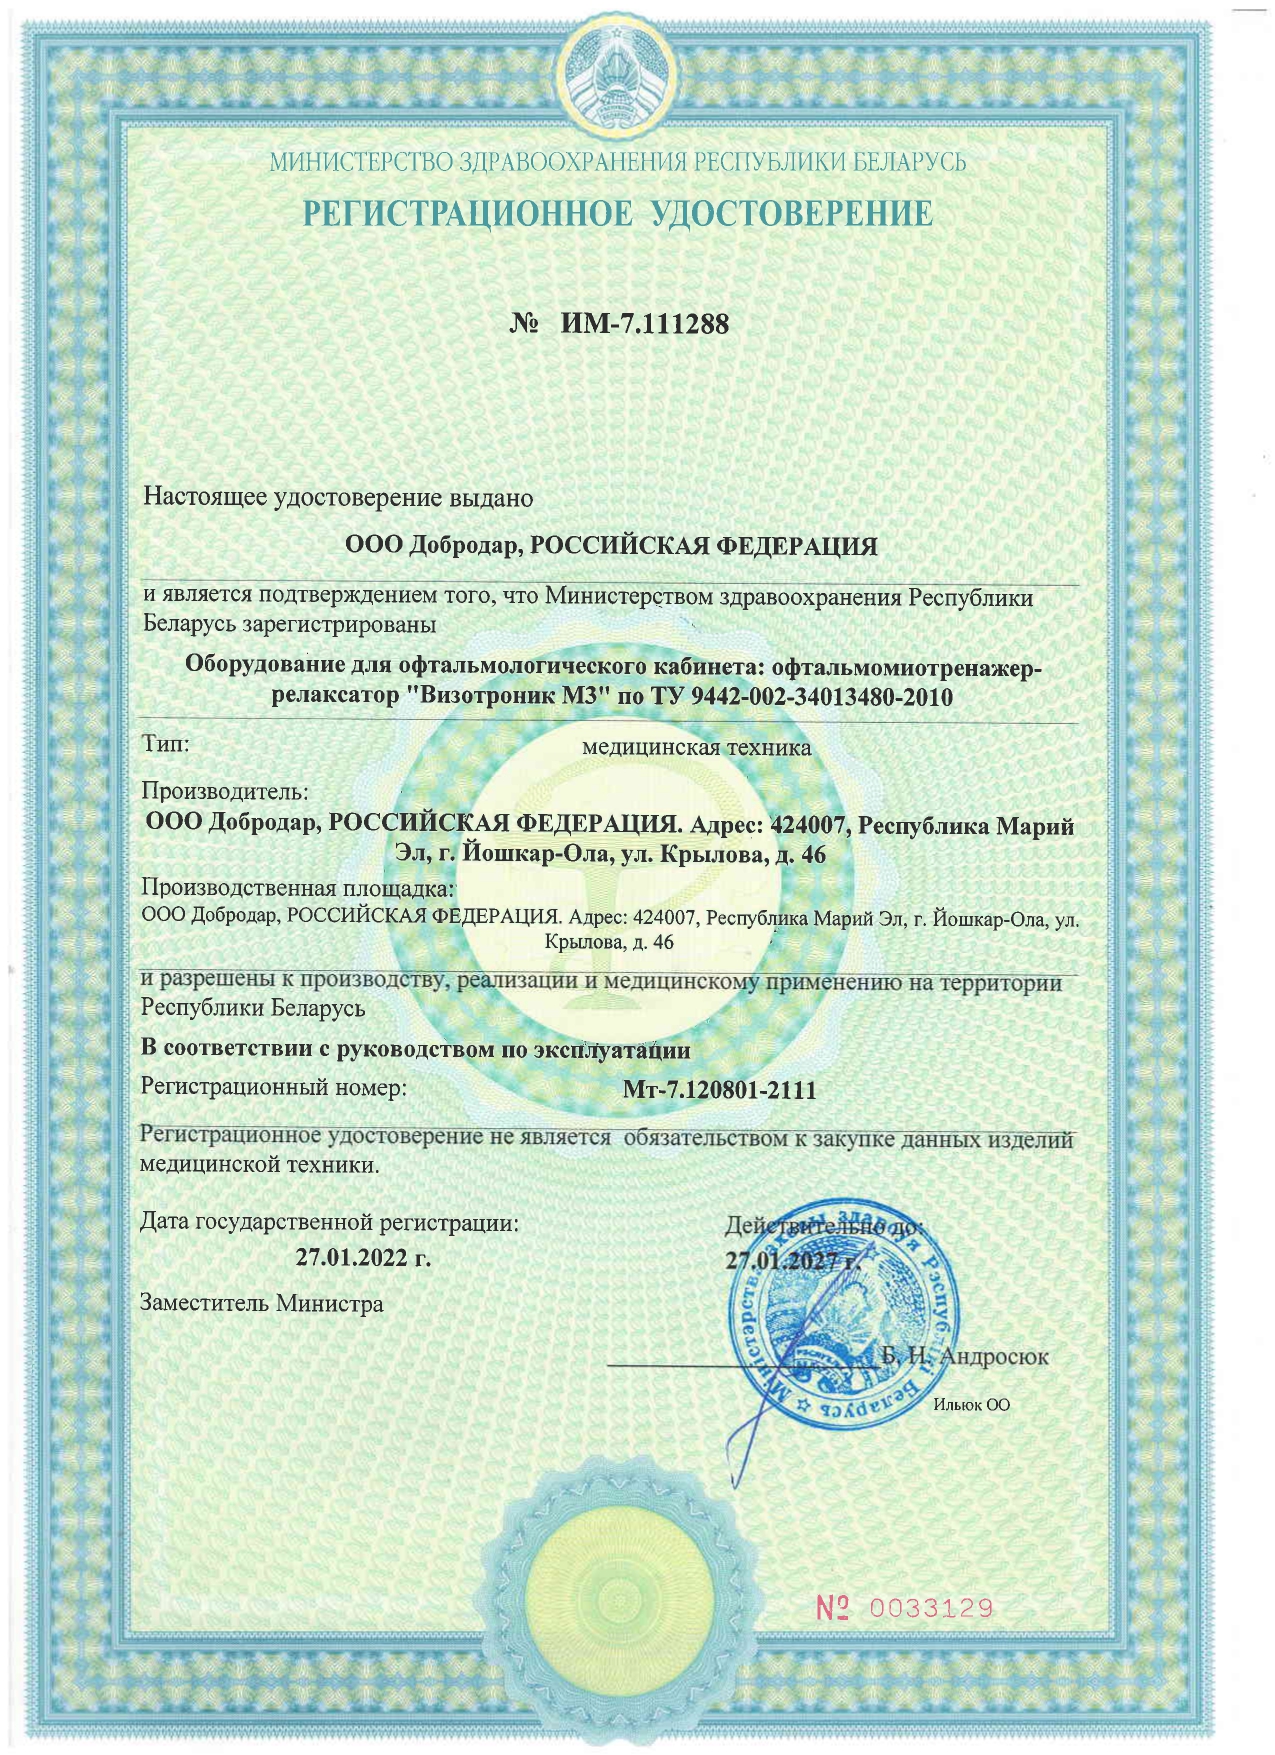 Регистрационное удостоверение на территории Республики Беларусь